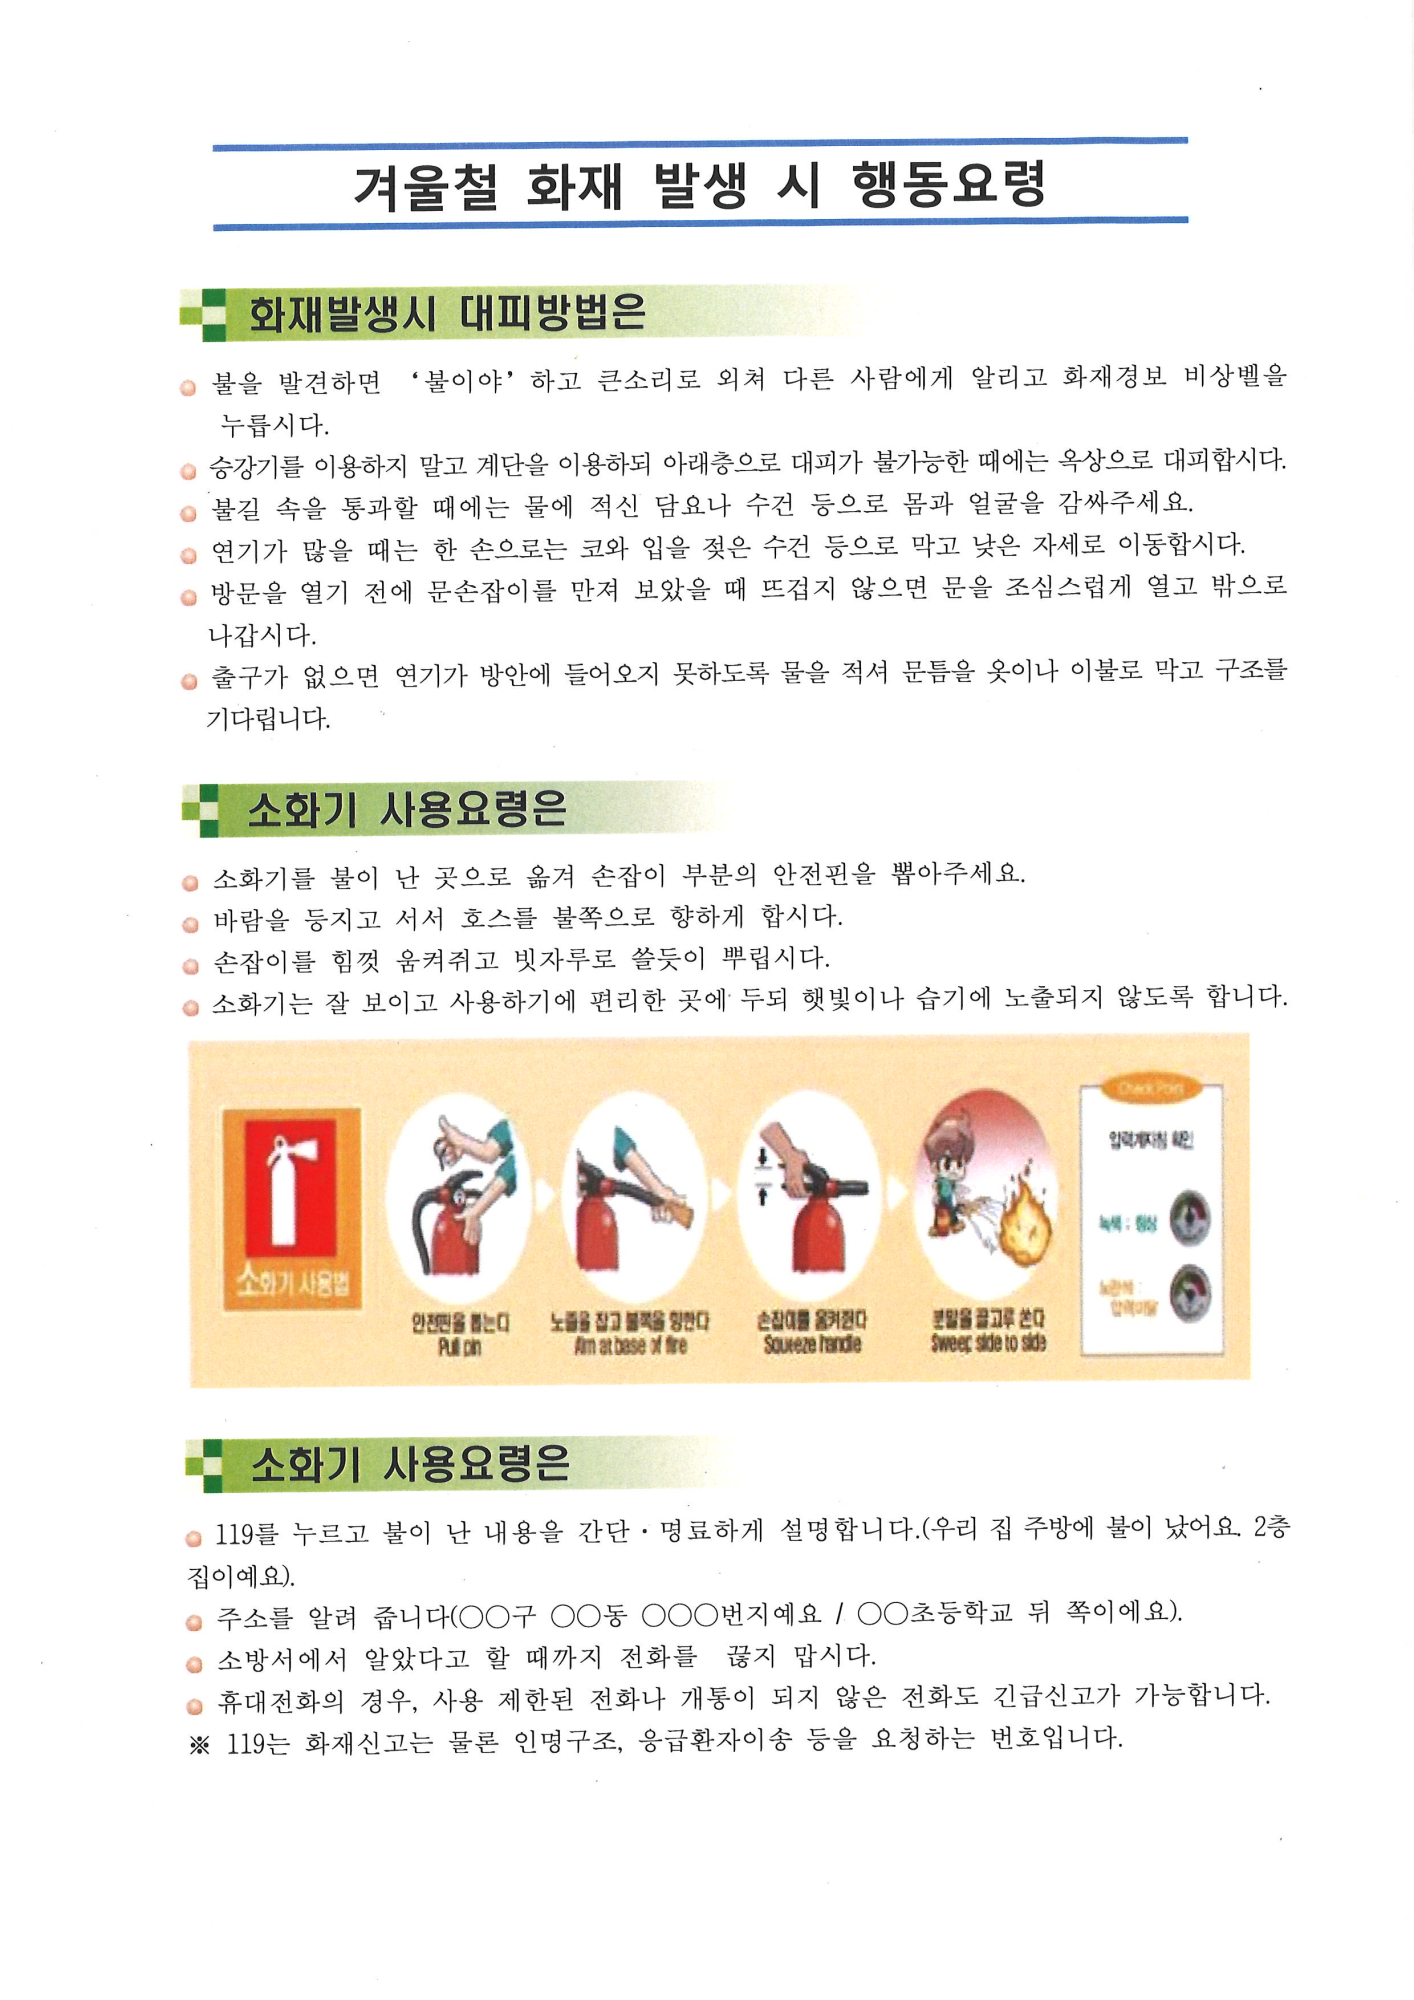 화재예방 및 화재, 지진발생 시 행동요령 안내(2)